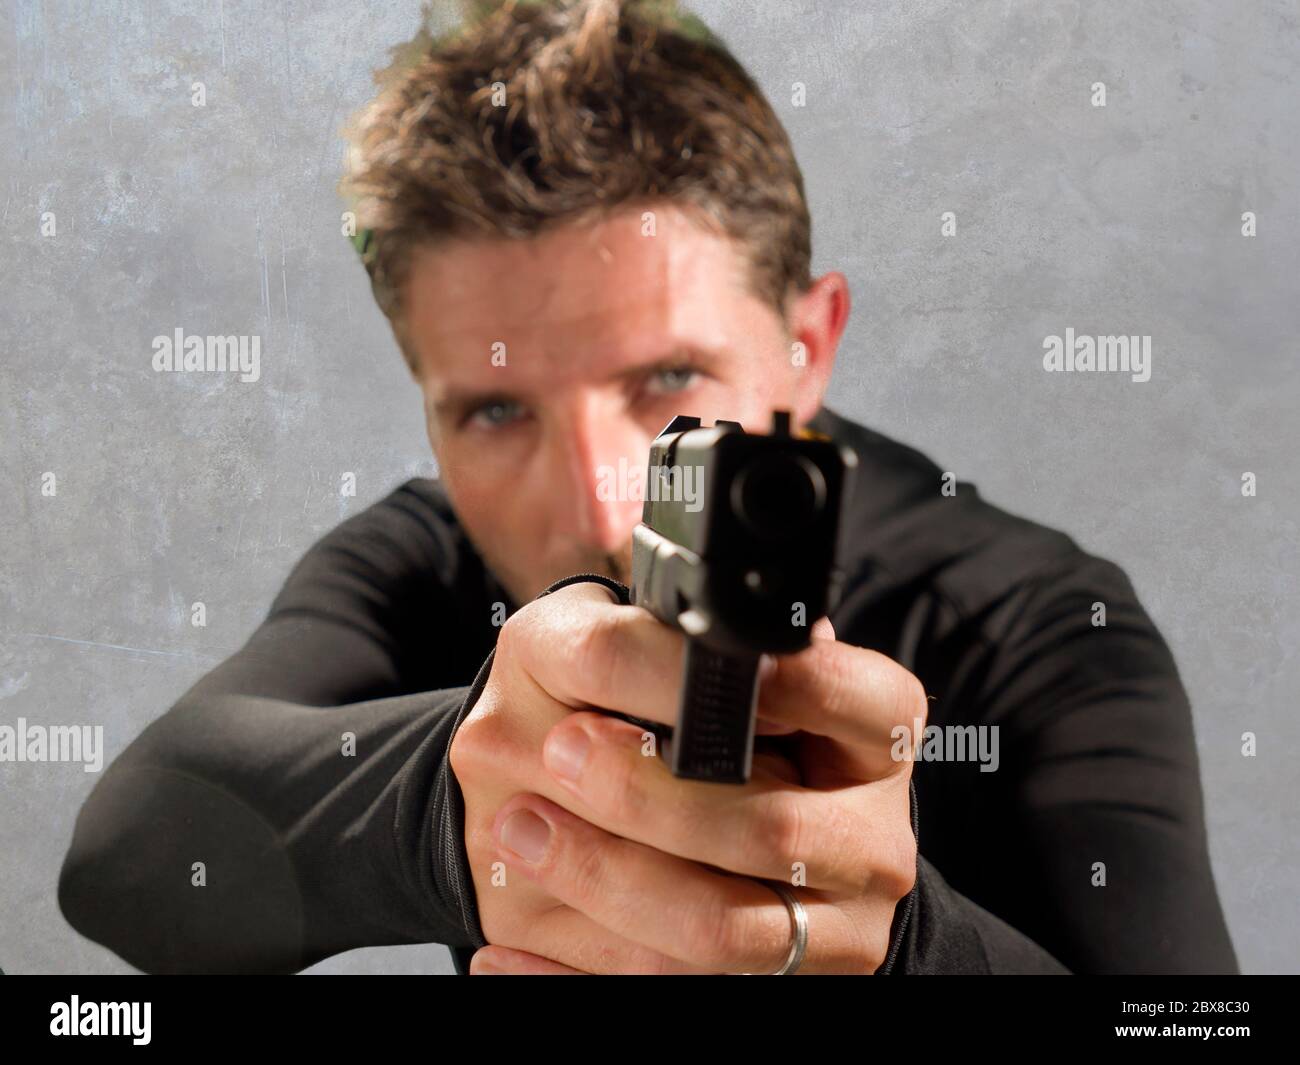 gun pointing at camera stock photo